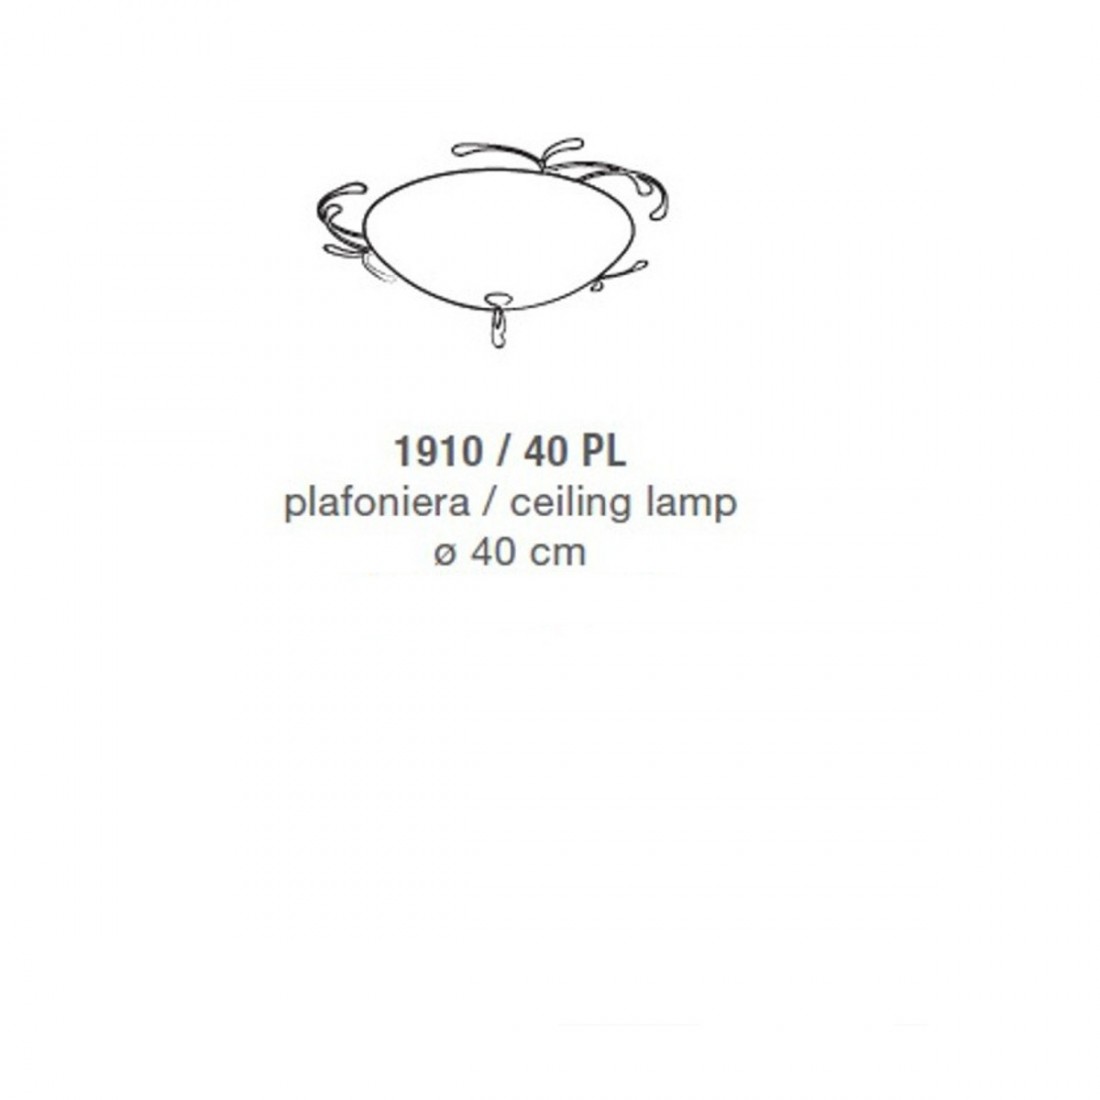 Plafoniera classica LAM 1910 PL 40 E27 LED, riccioli in metallo